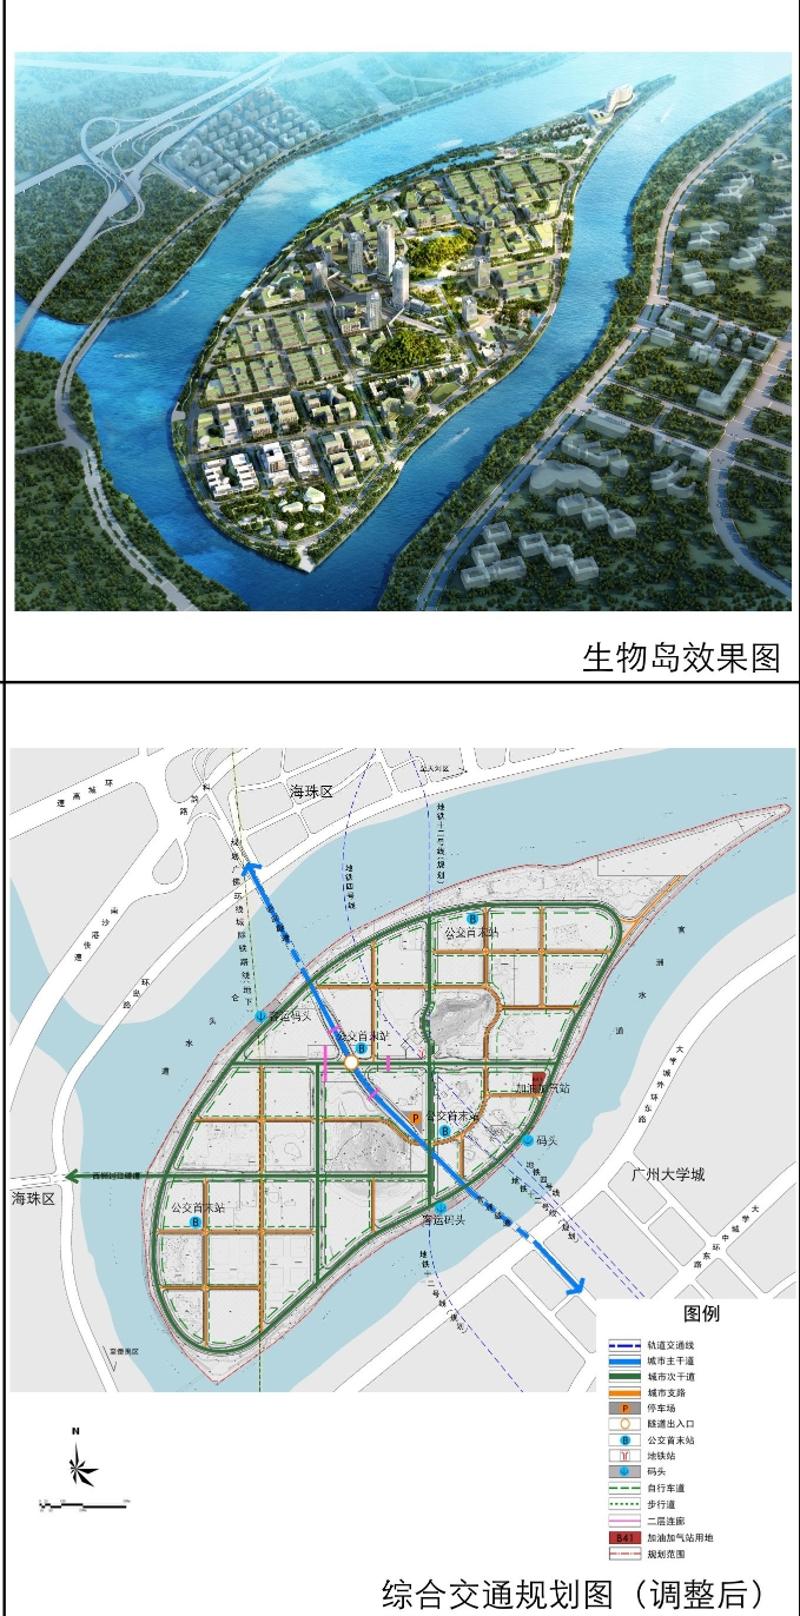 生物岛将建环岛自行车道,增加2个水巴码头及两条轨道线